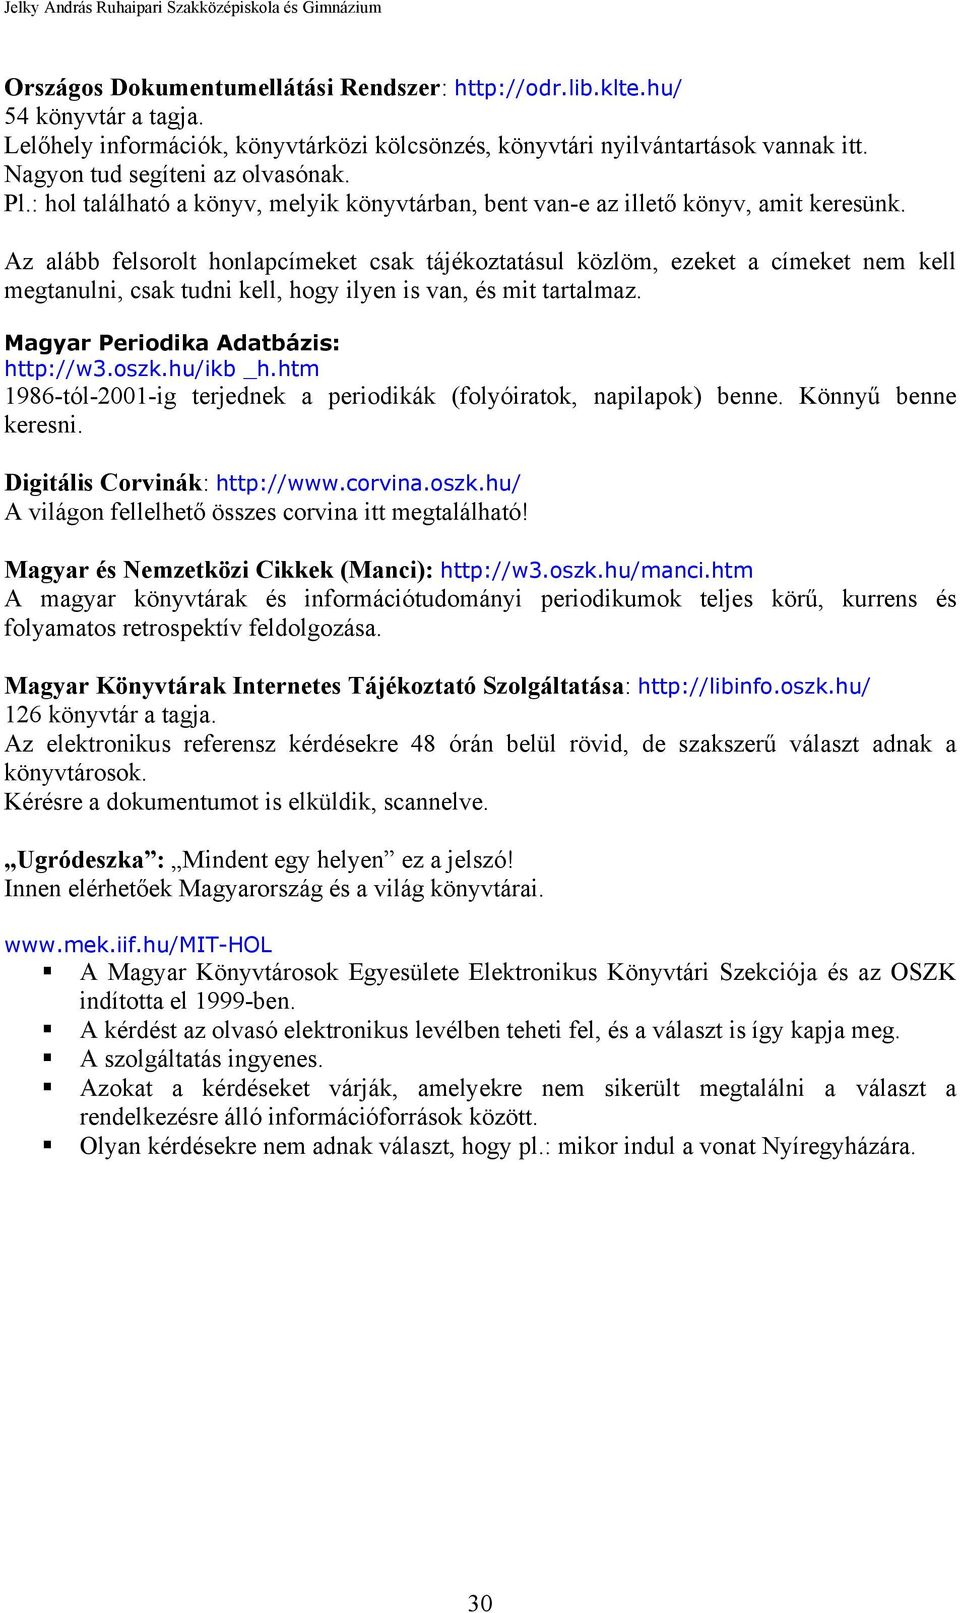 Az alább felsorolt honlapcímeket csak tájékoztatásul közlöm, ezeket a címeket nem kell megtanulni, csak tudni kell, hogy ilyen is van, és mit tartalmaz. Magyar Periodika Adatbázis: http://w3.oszk.